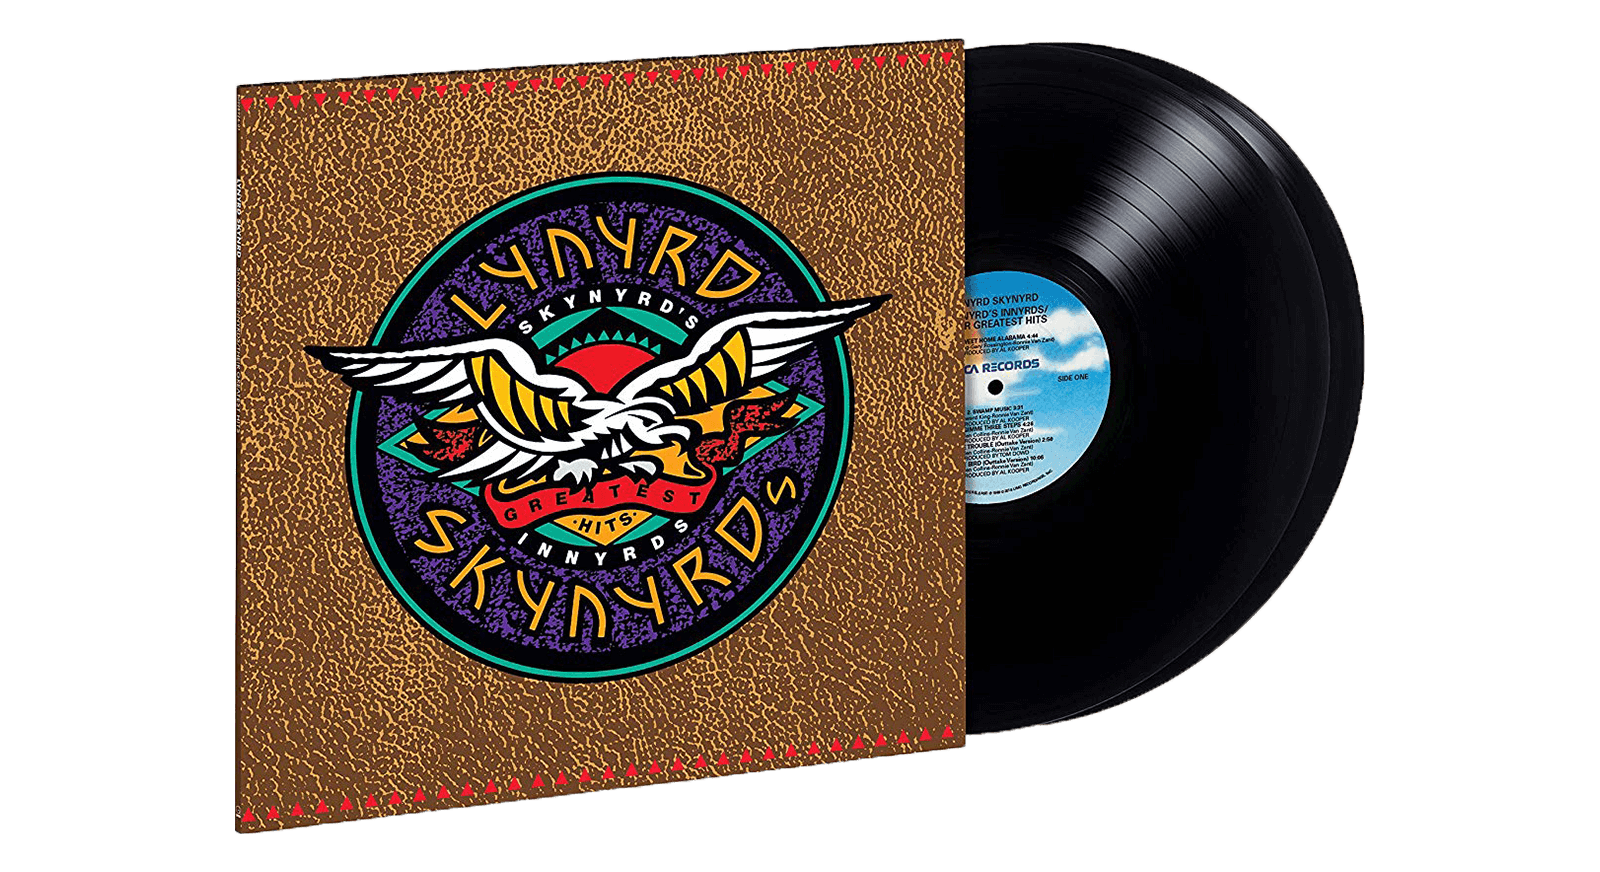 Vinyl | Lynyrd Skynyrd | Skynyrd's Innyrds - The Record Hub